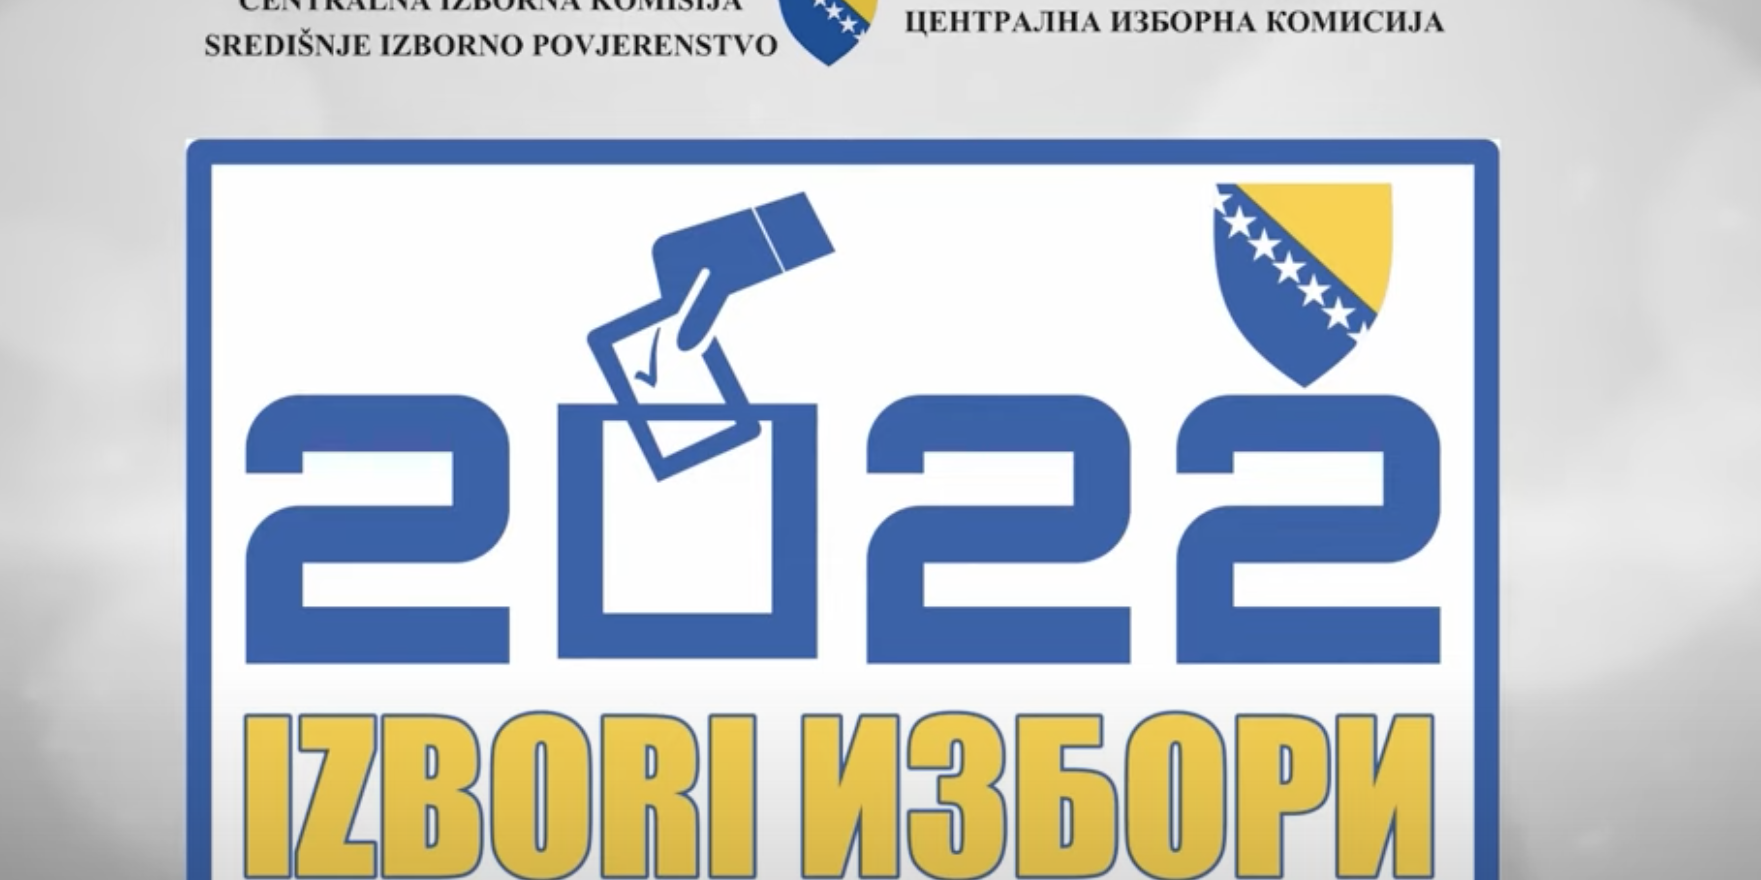 Opći izbori u Bosni i Hercegovini će se održati u nedjelju, 2.10.2022